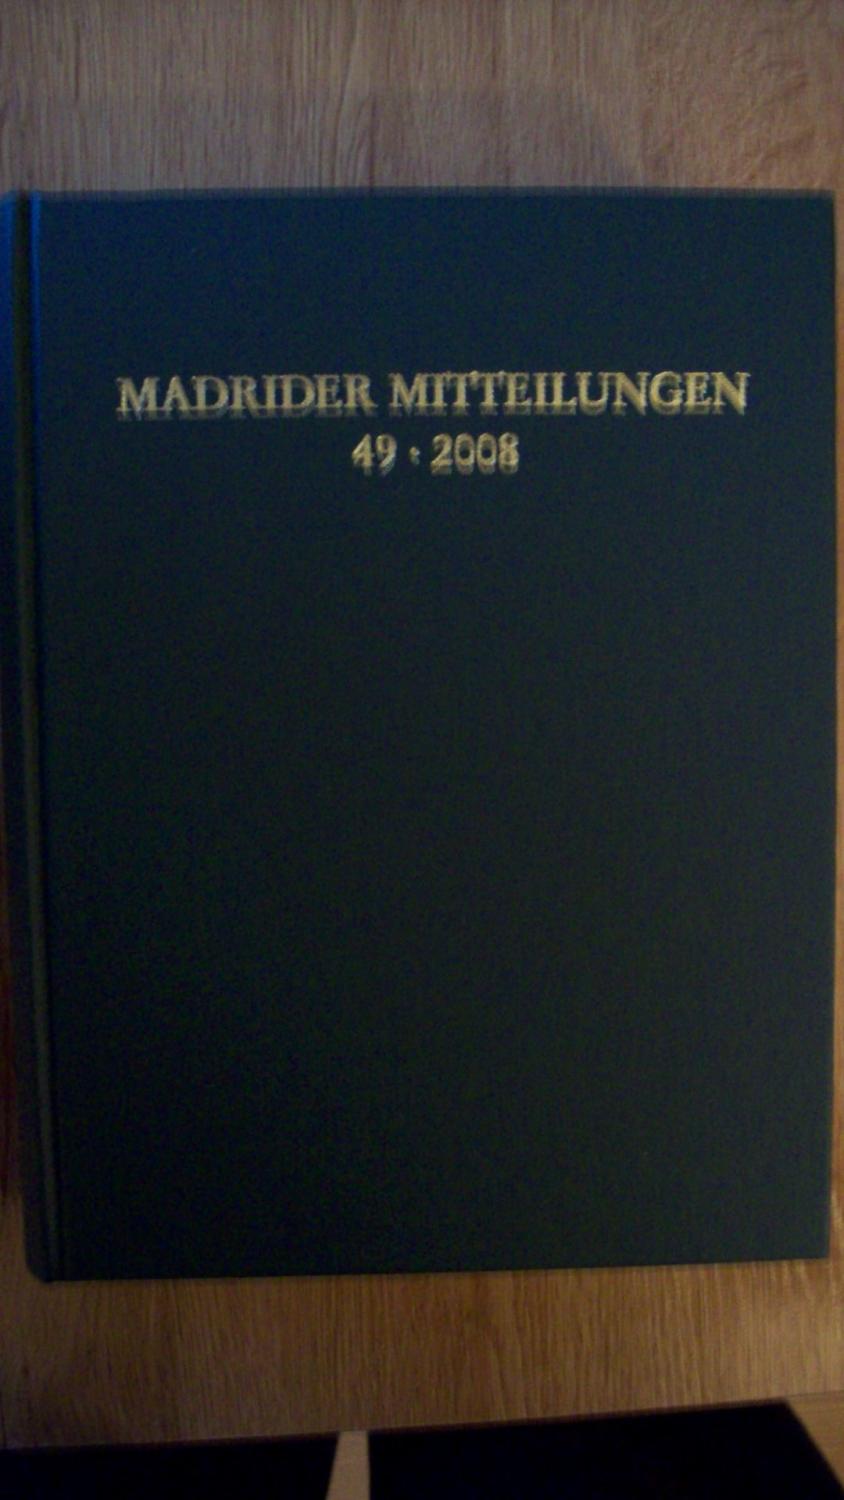 MADRIDER MITTEILUNGEN. 49 - 2008 - VV.AA.